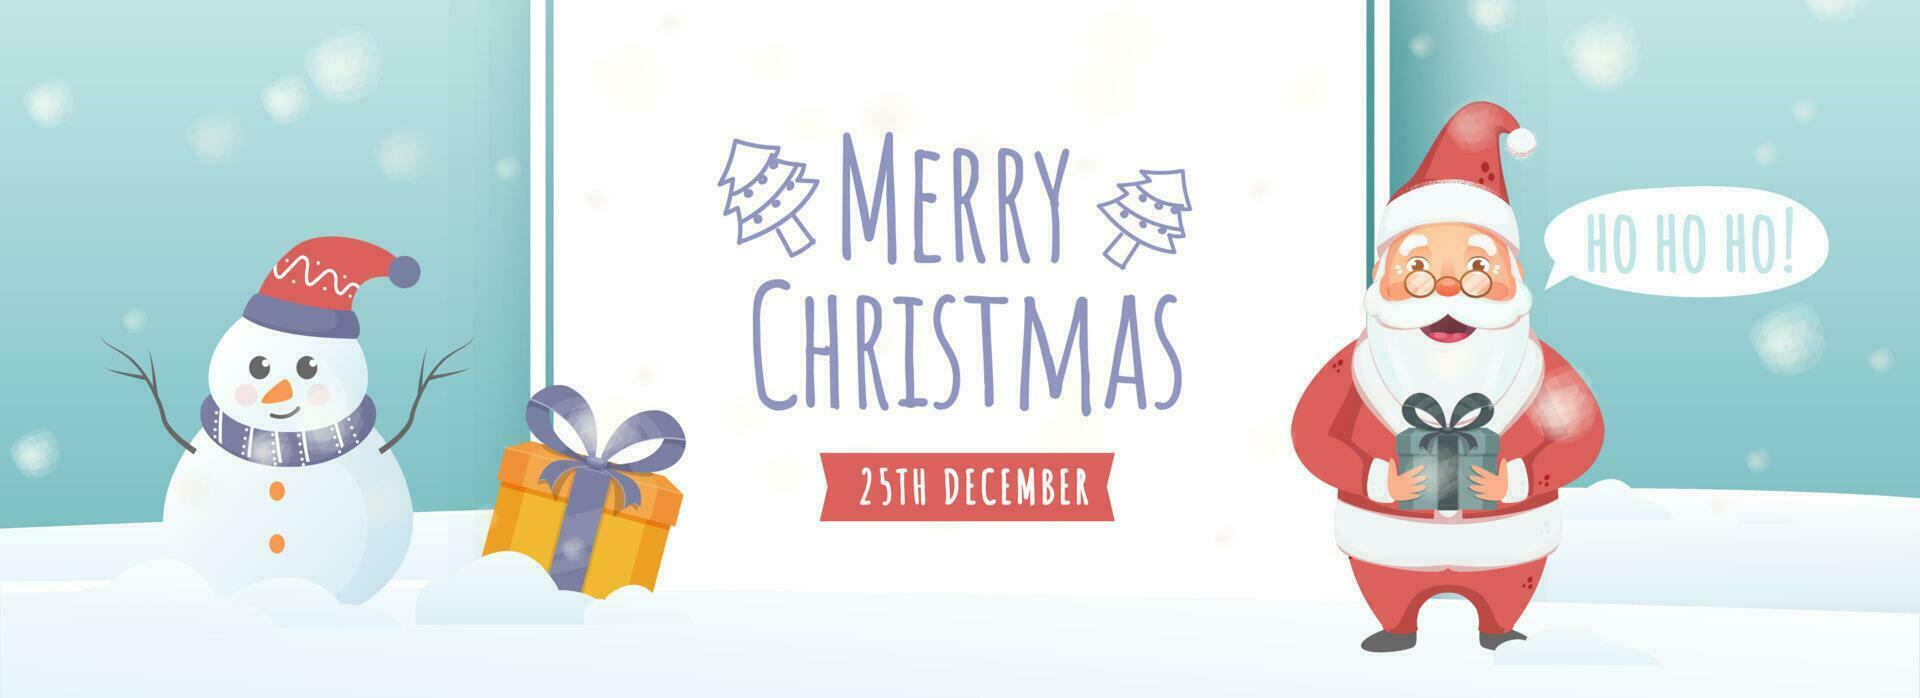 Illustration von Santa claus Charakter mit Geschenk Kisten und Karikatur Schneemann auf Weiß und Licht Türkis schneebedeckt Hintergrund zum fröhlich Weihnachten Feier. vektor